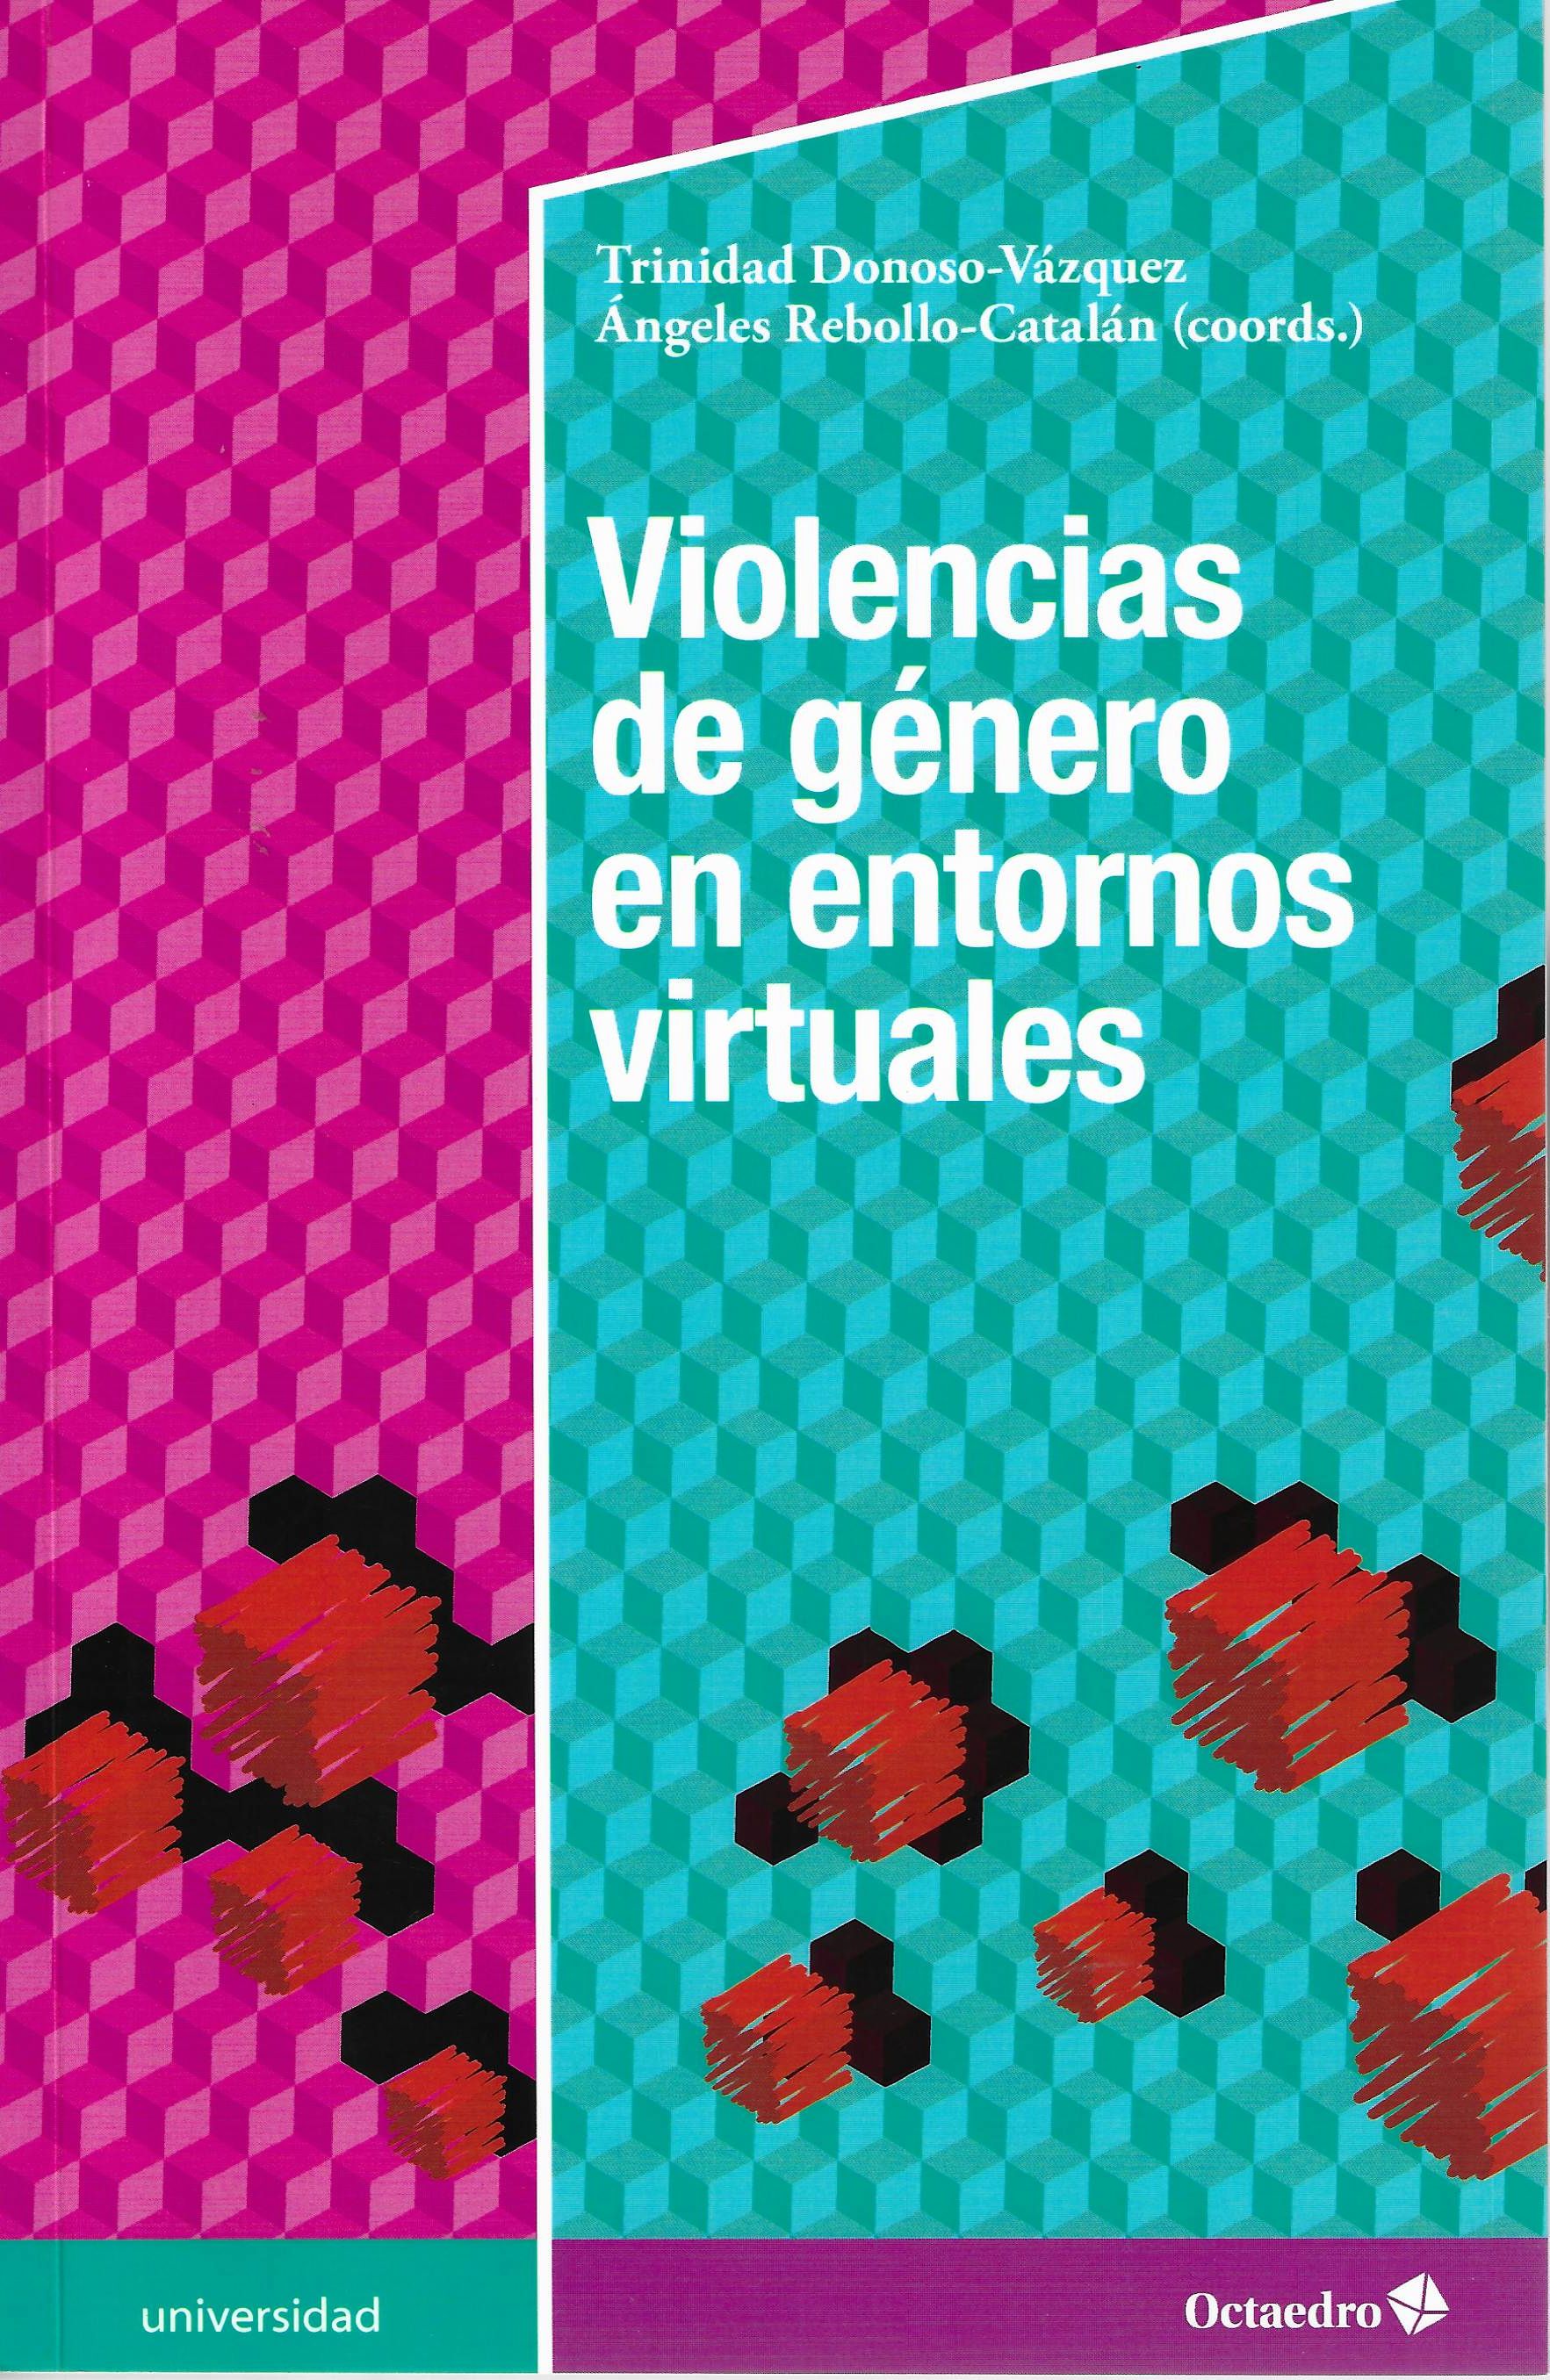 Imagen de portada del libro Violencia de género en entornos virtuales